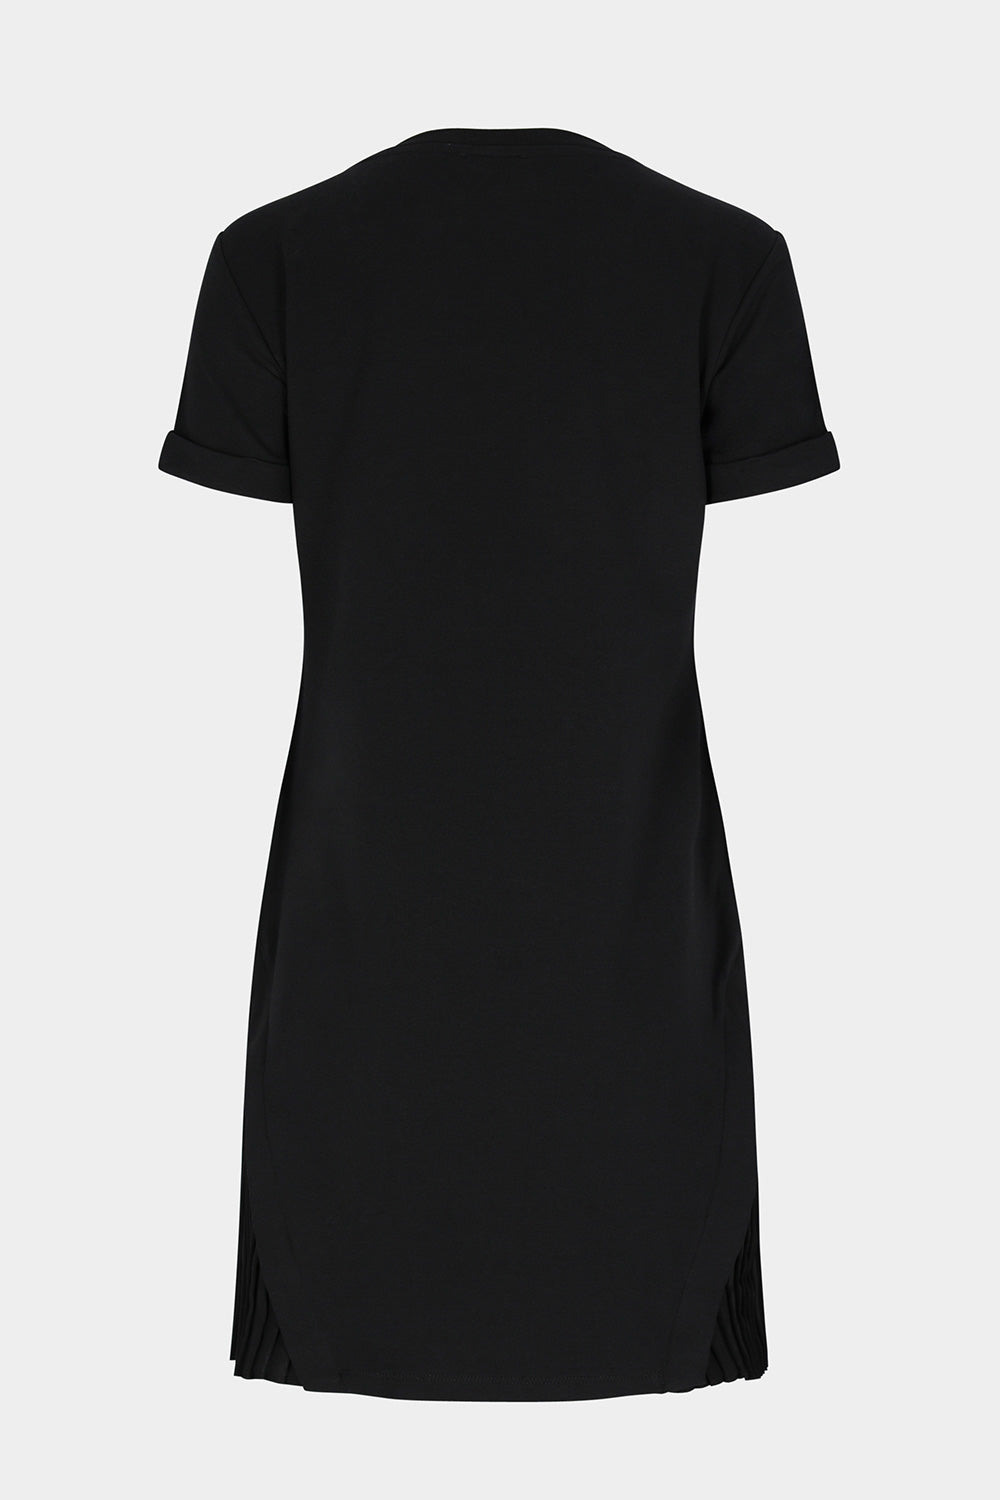 שמלת טי שירט לנשים כפתורים LIU JO Vendome online | ונדום .